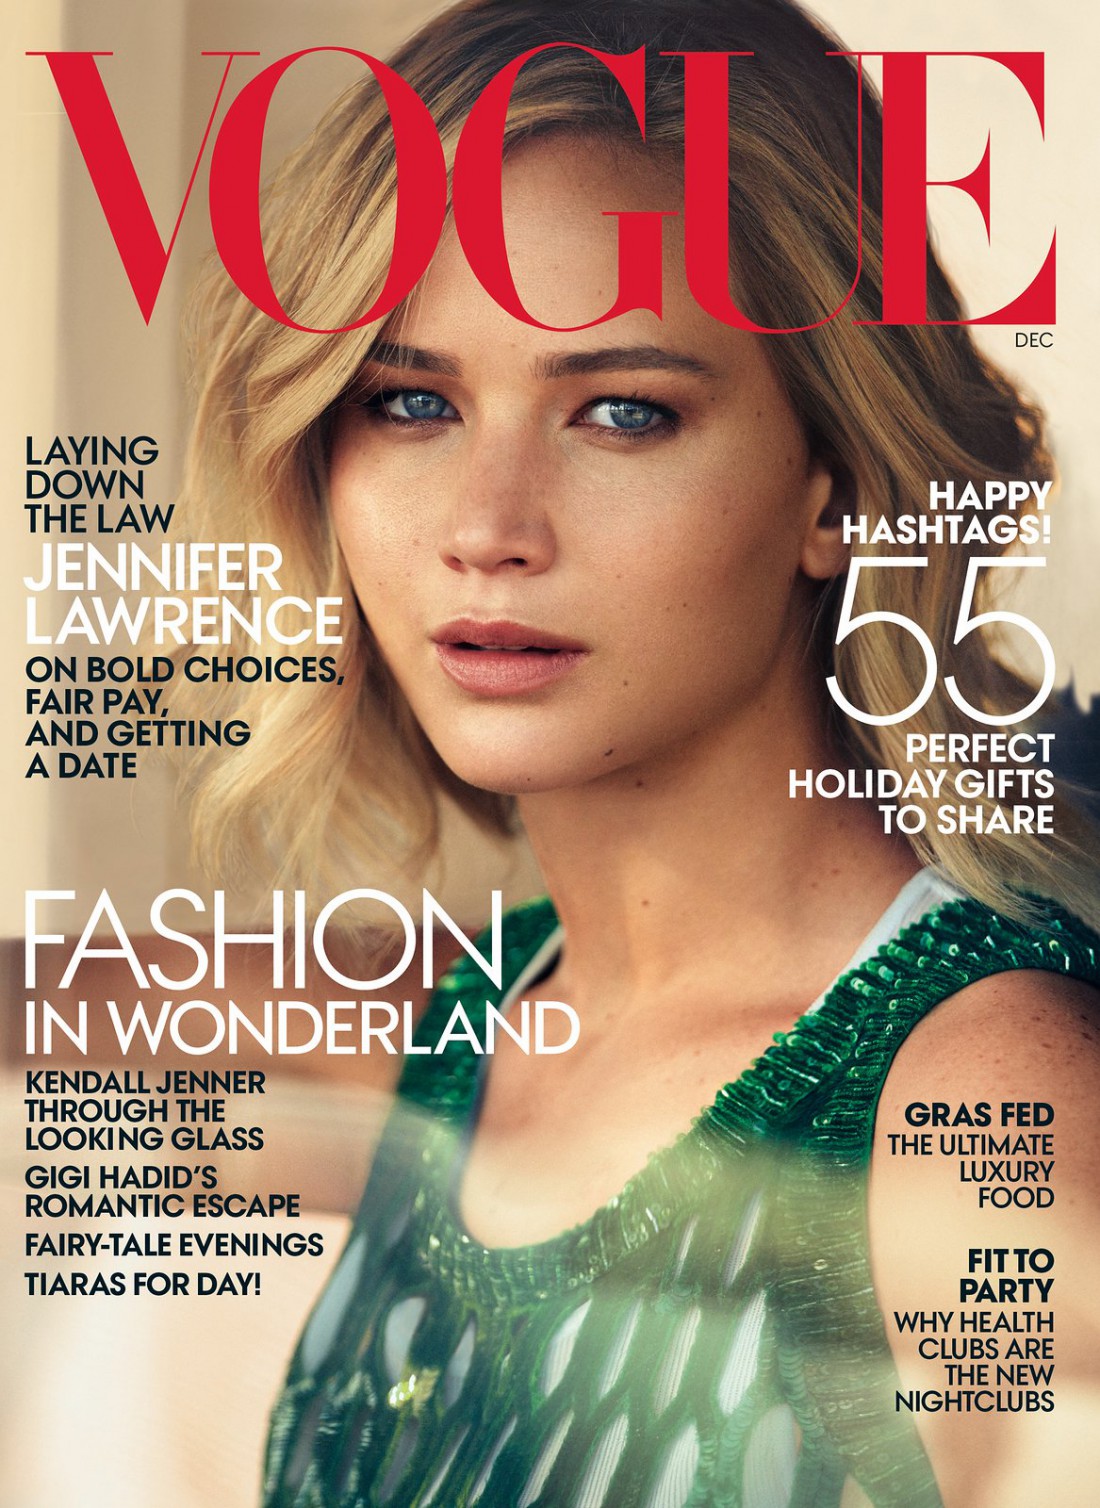 Дженифер Лоуренс в новом выпуске Vogue